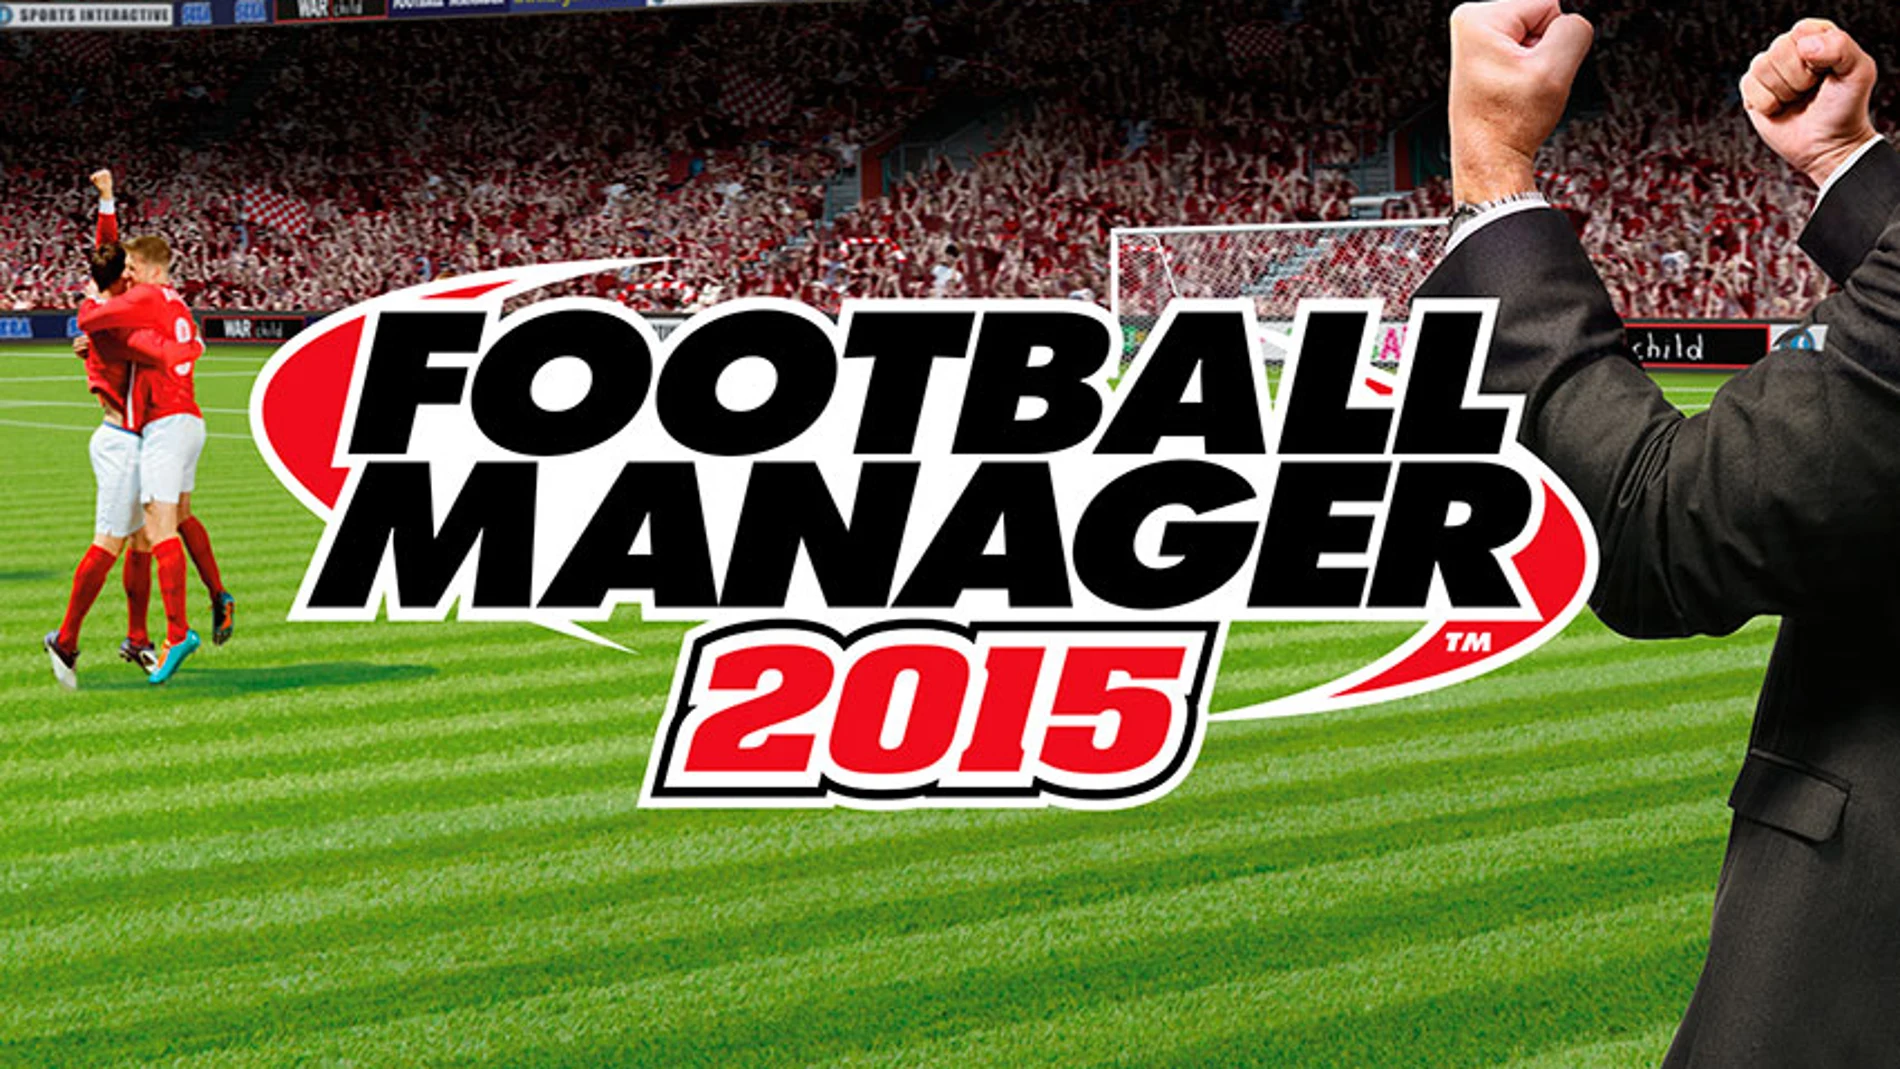 «Football Manager Classic 2015» entra al terreno de las tabletas